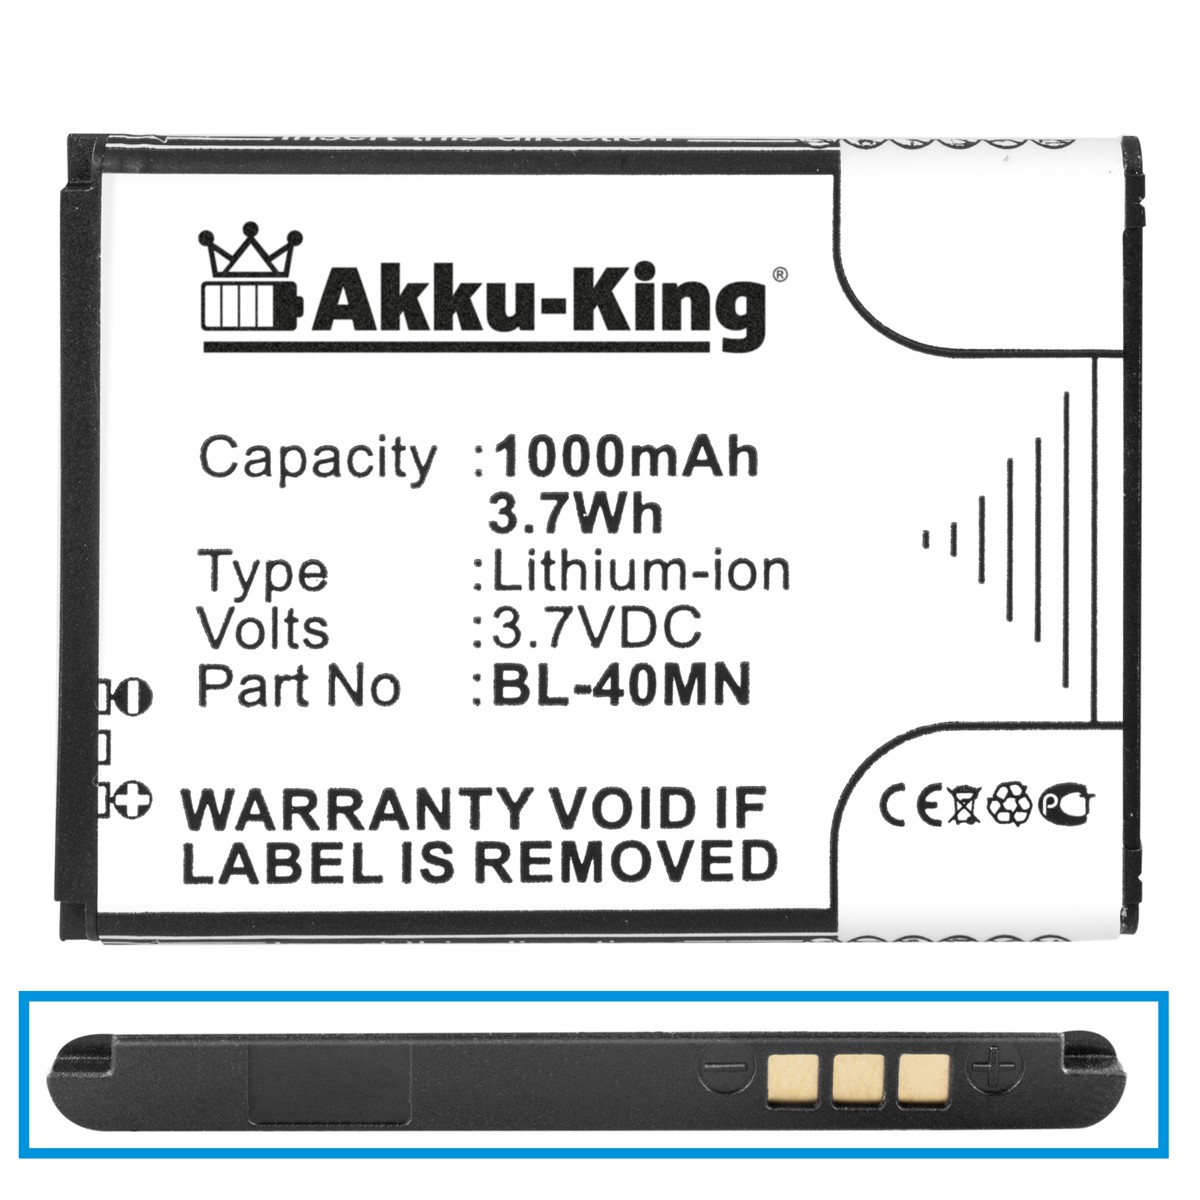 AKKU-KING Akku kompatibel mit LG Volt, BL-40MN 3.7 1000mAh Handy-Akku, Li-Ion